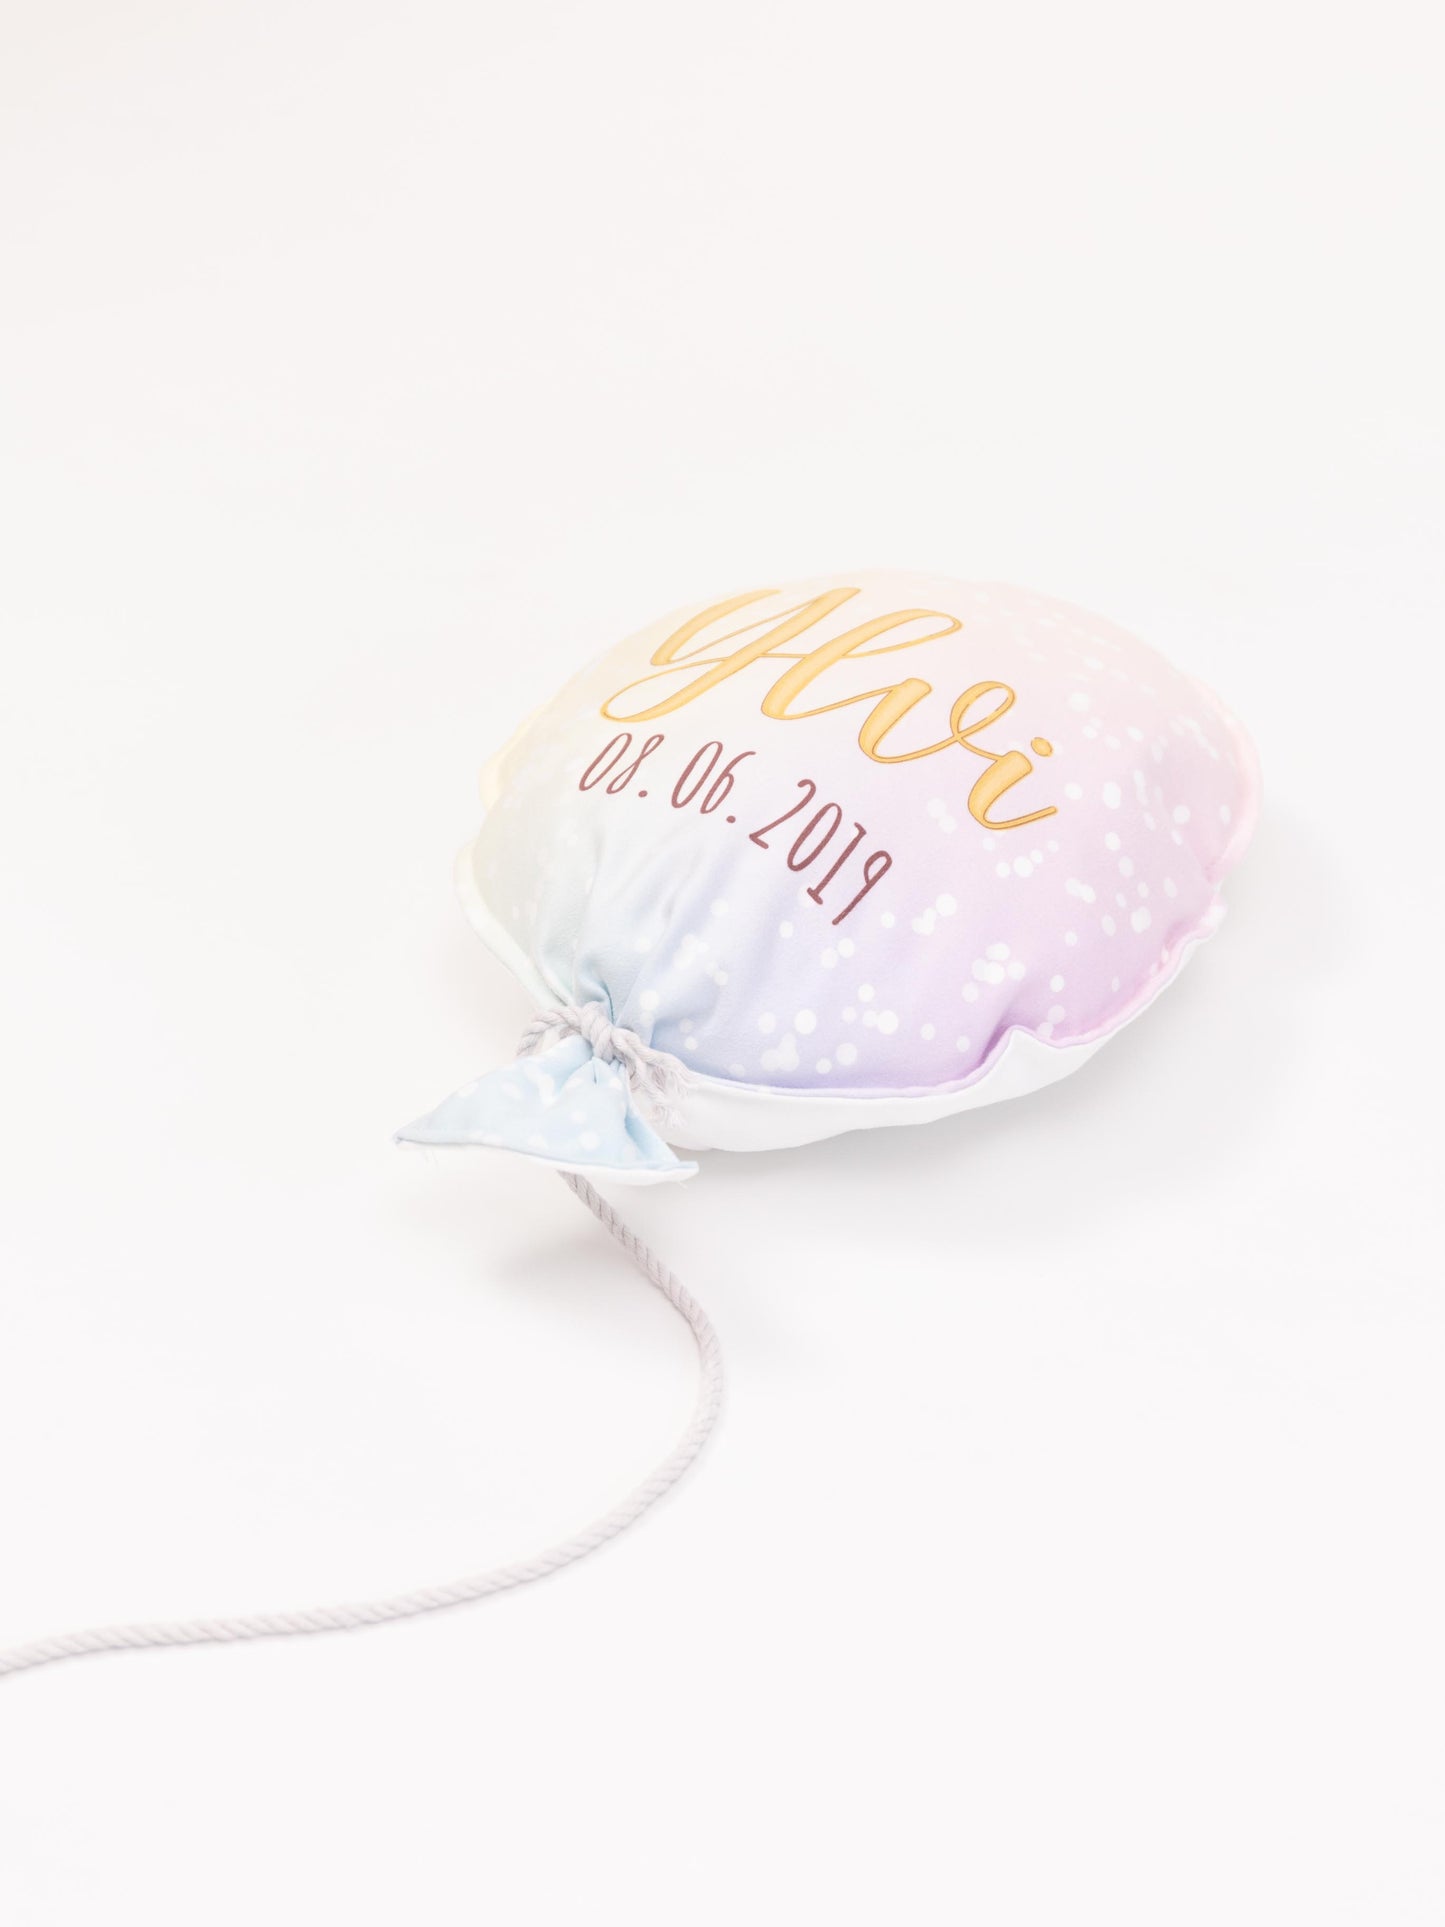 Stoff-Luftballon in sanftem Farbton personalisiert mit Namen und Geburtsdatum.